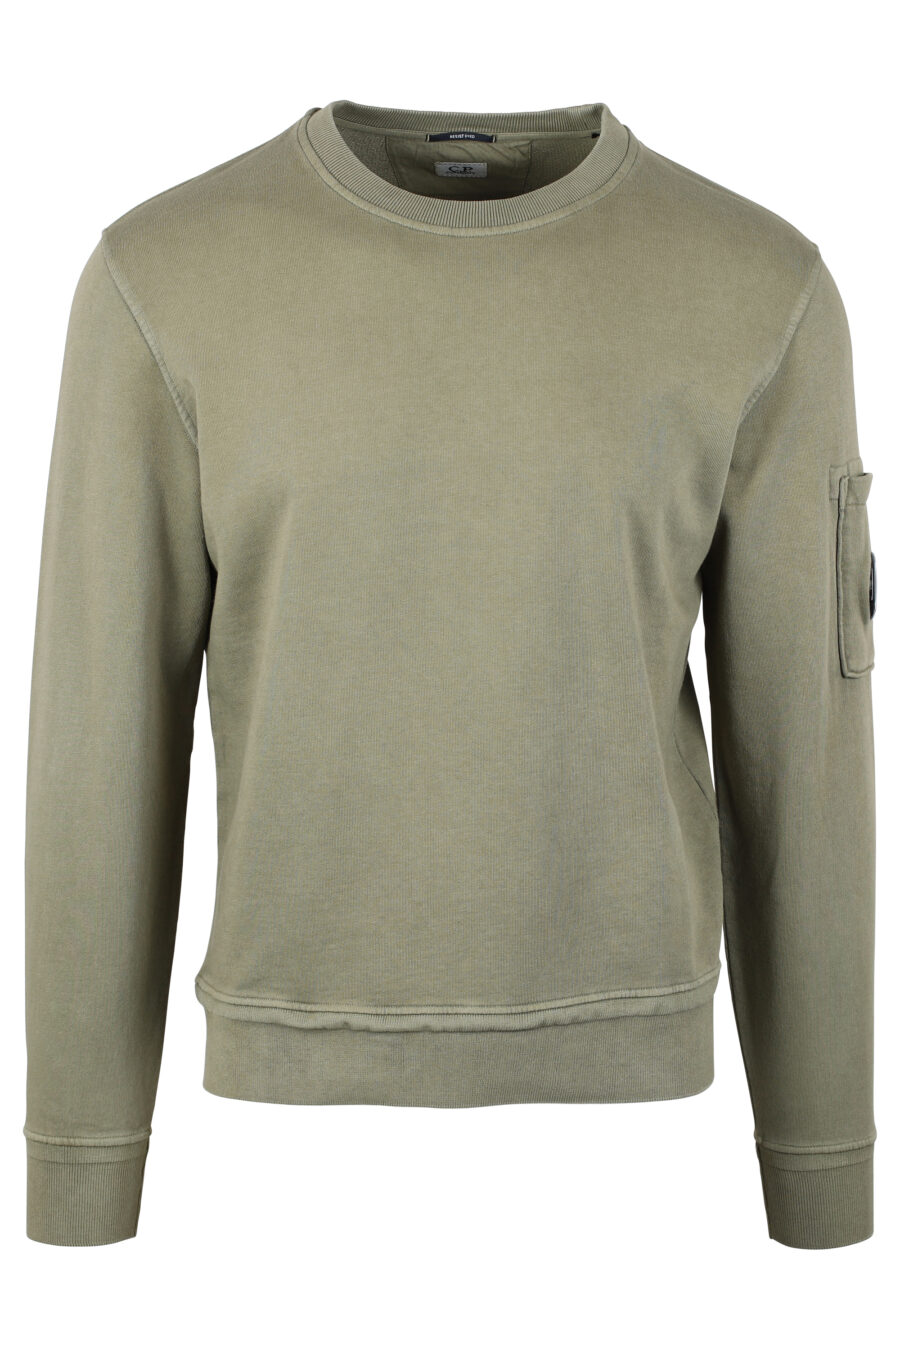 Militärgrünes Sweatshirt mit Fleece-Futter und rundem Mini-Logo - IMG 4670